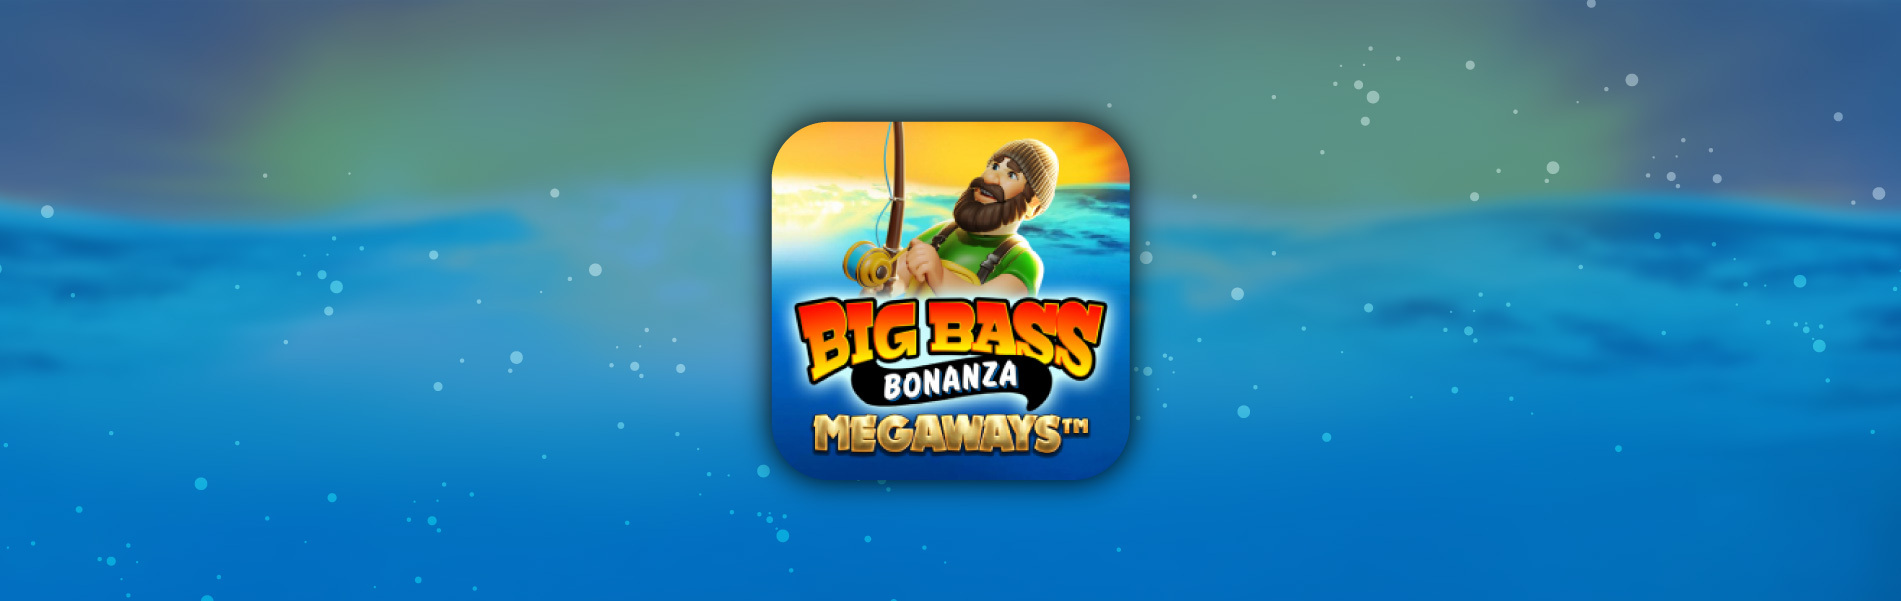 big bass bonanza megaways free play